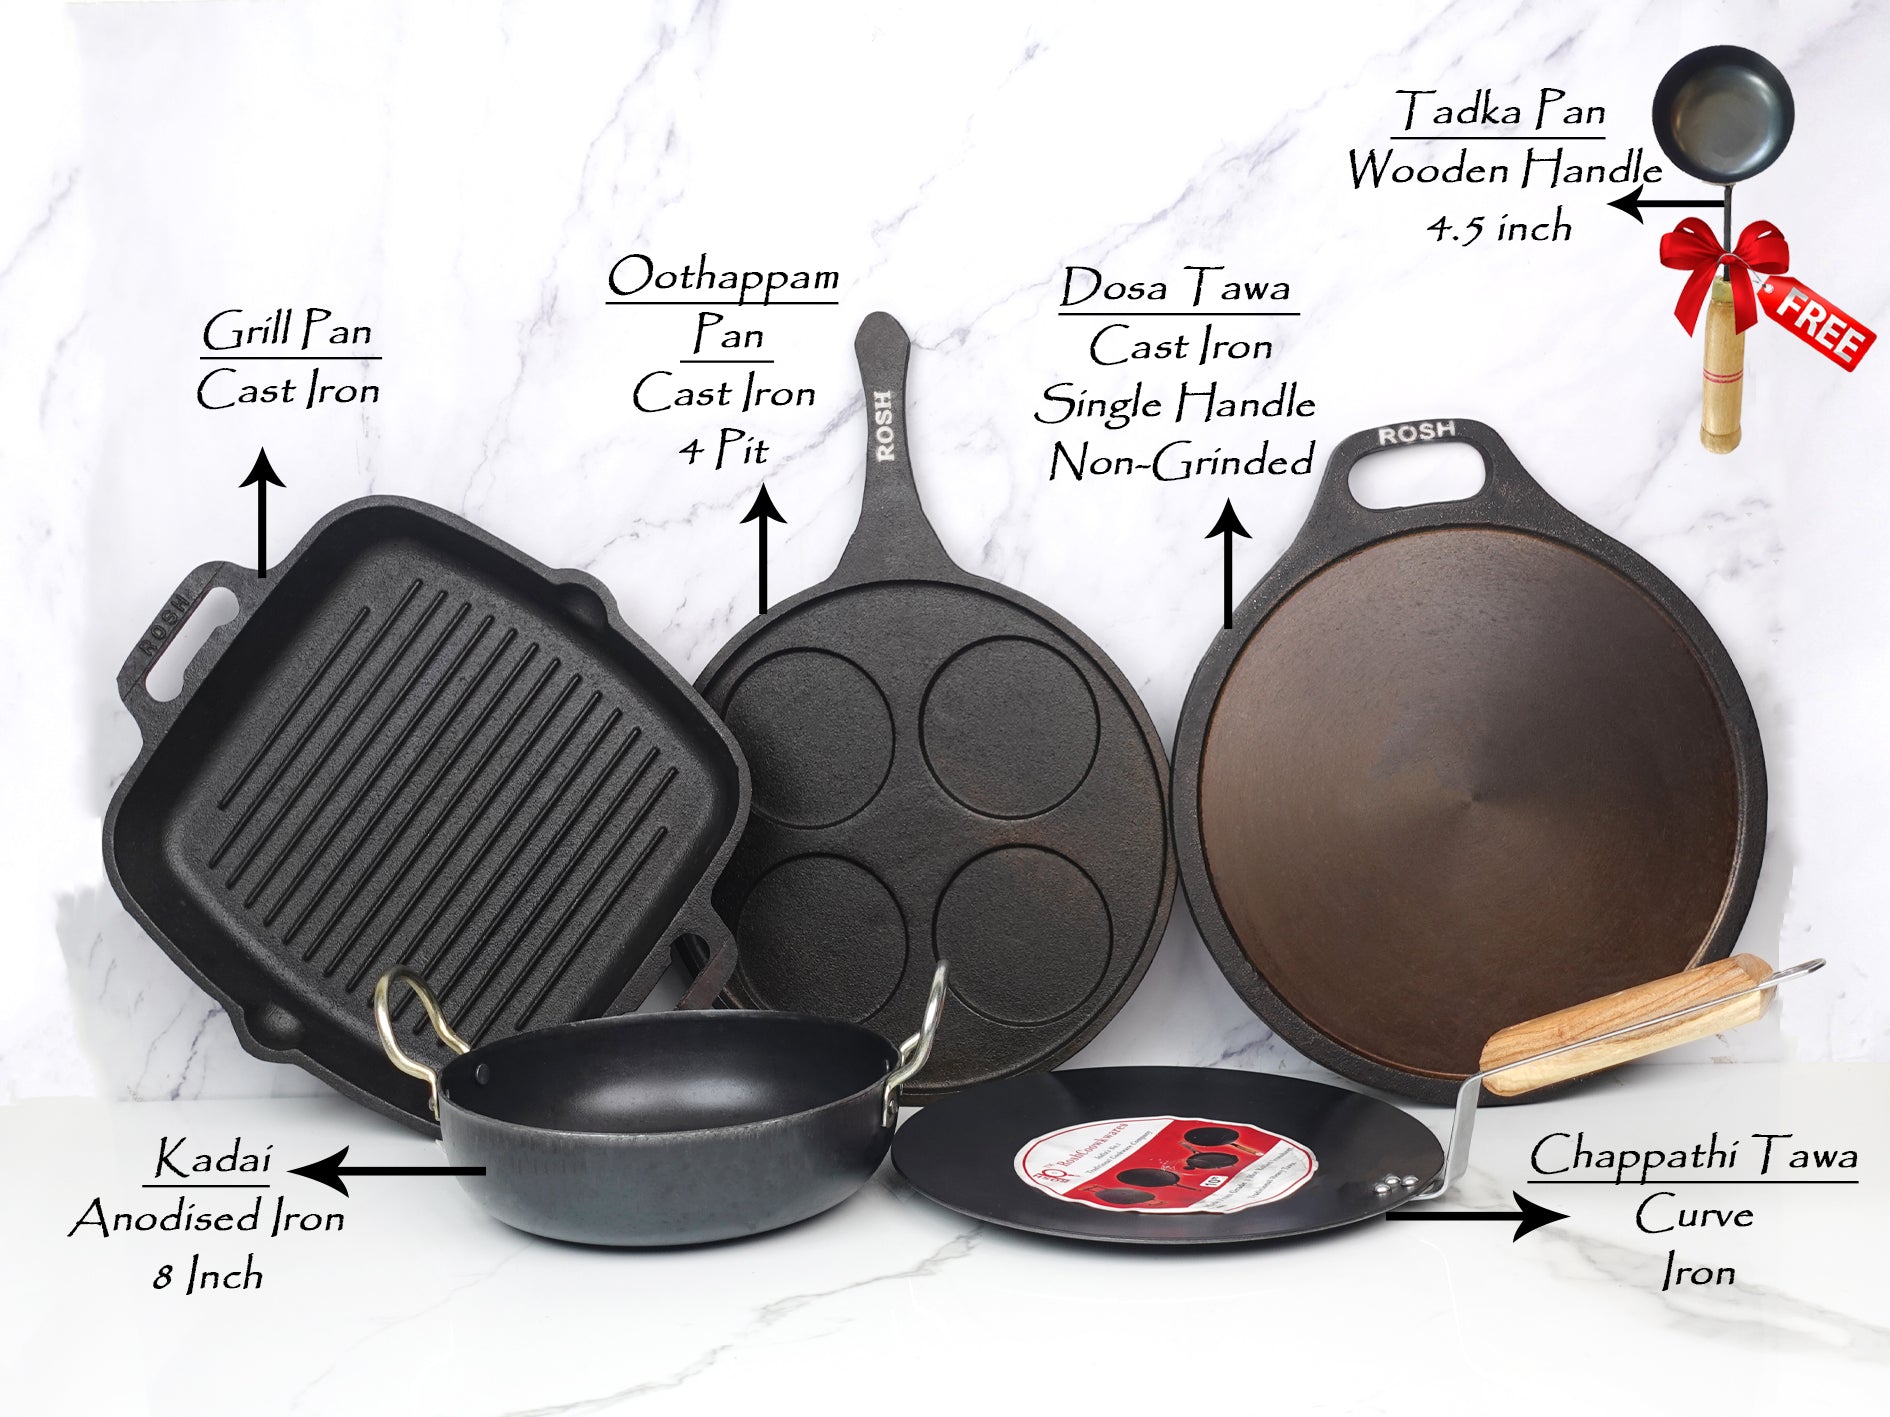 cast iron offer, cast iron cookwares, cookware offer